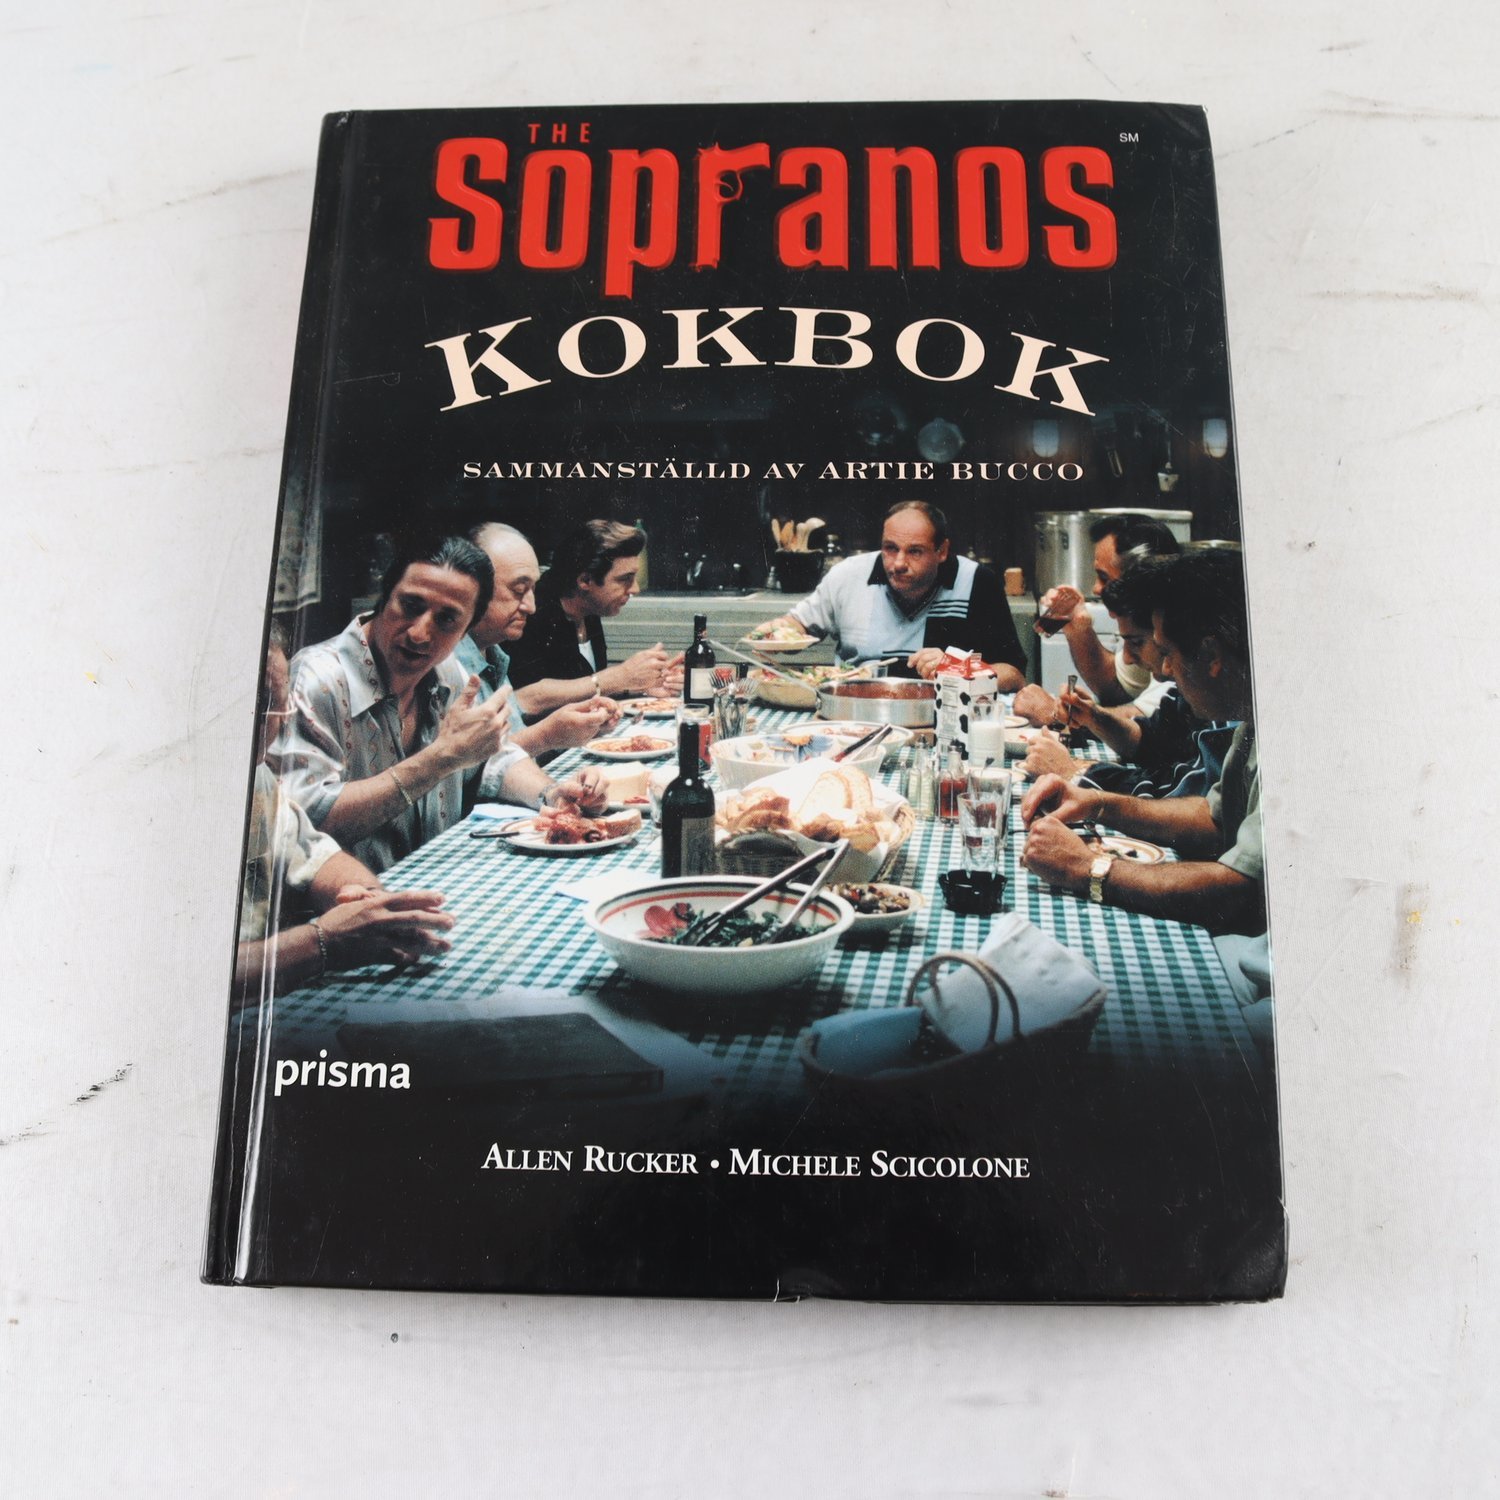 The Sopranos kokbok, sammanställd av Artie bucco